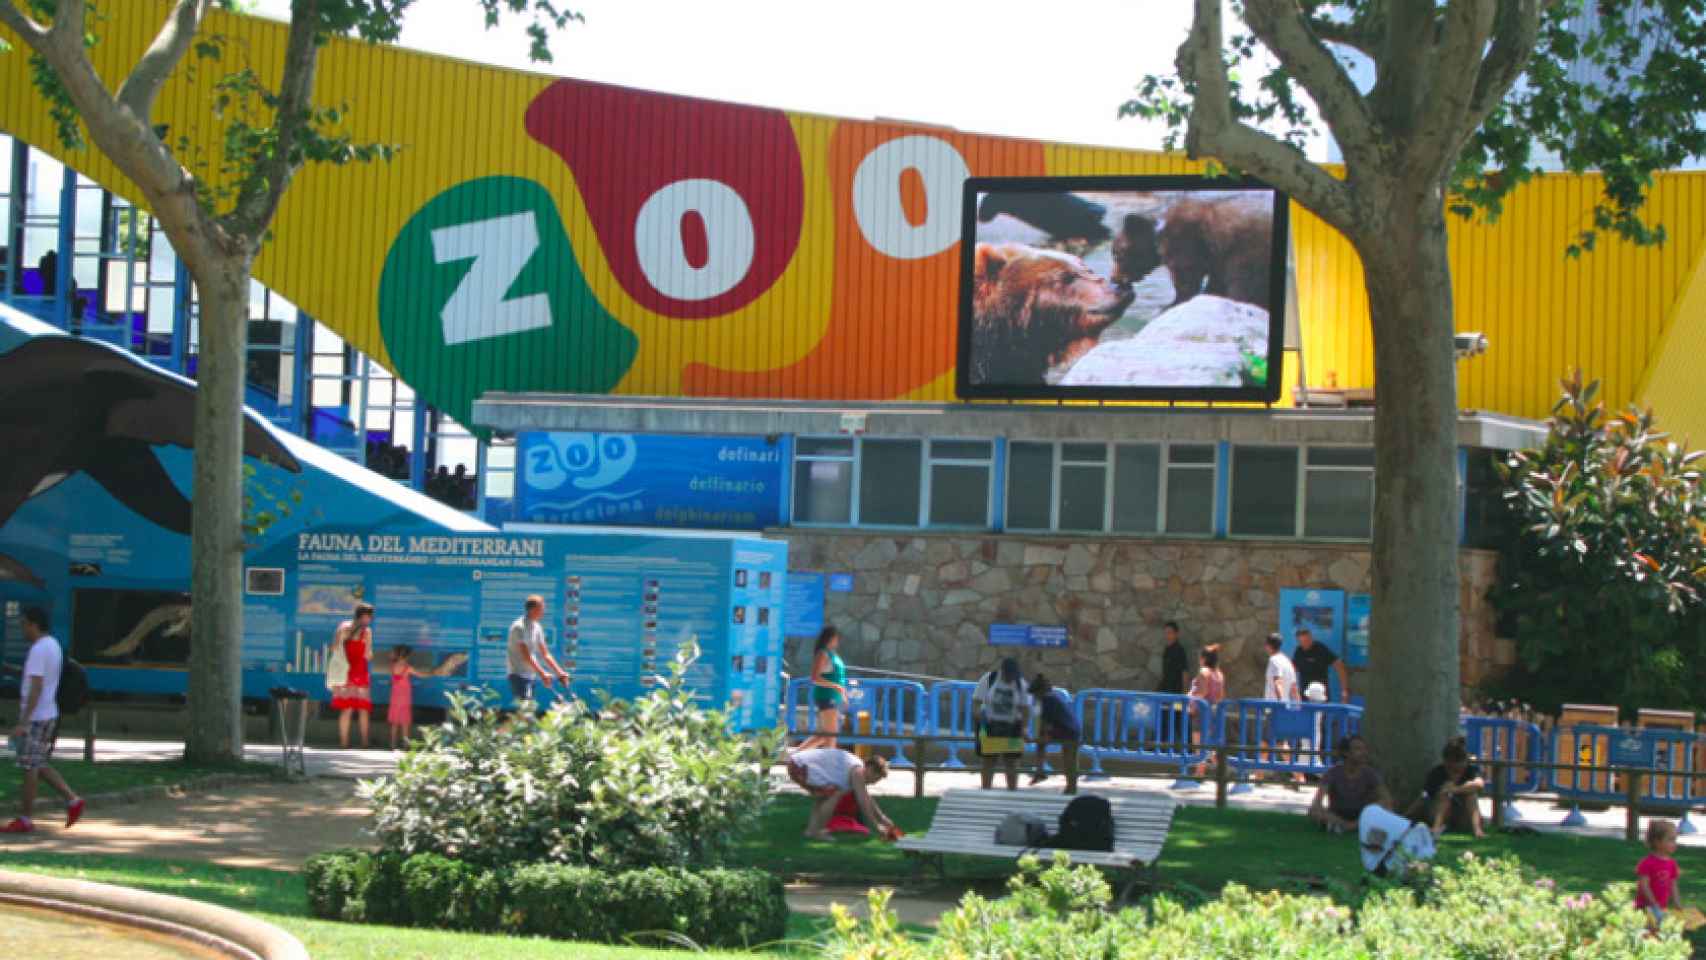 El precio del Zoo subirá en 2018 tras tres años congelado